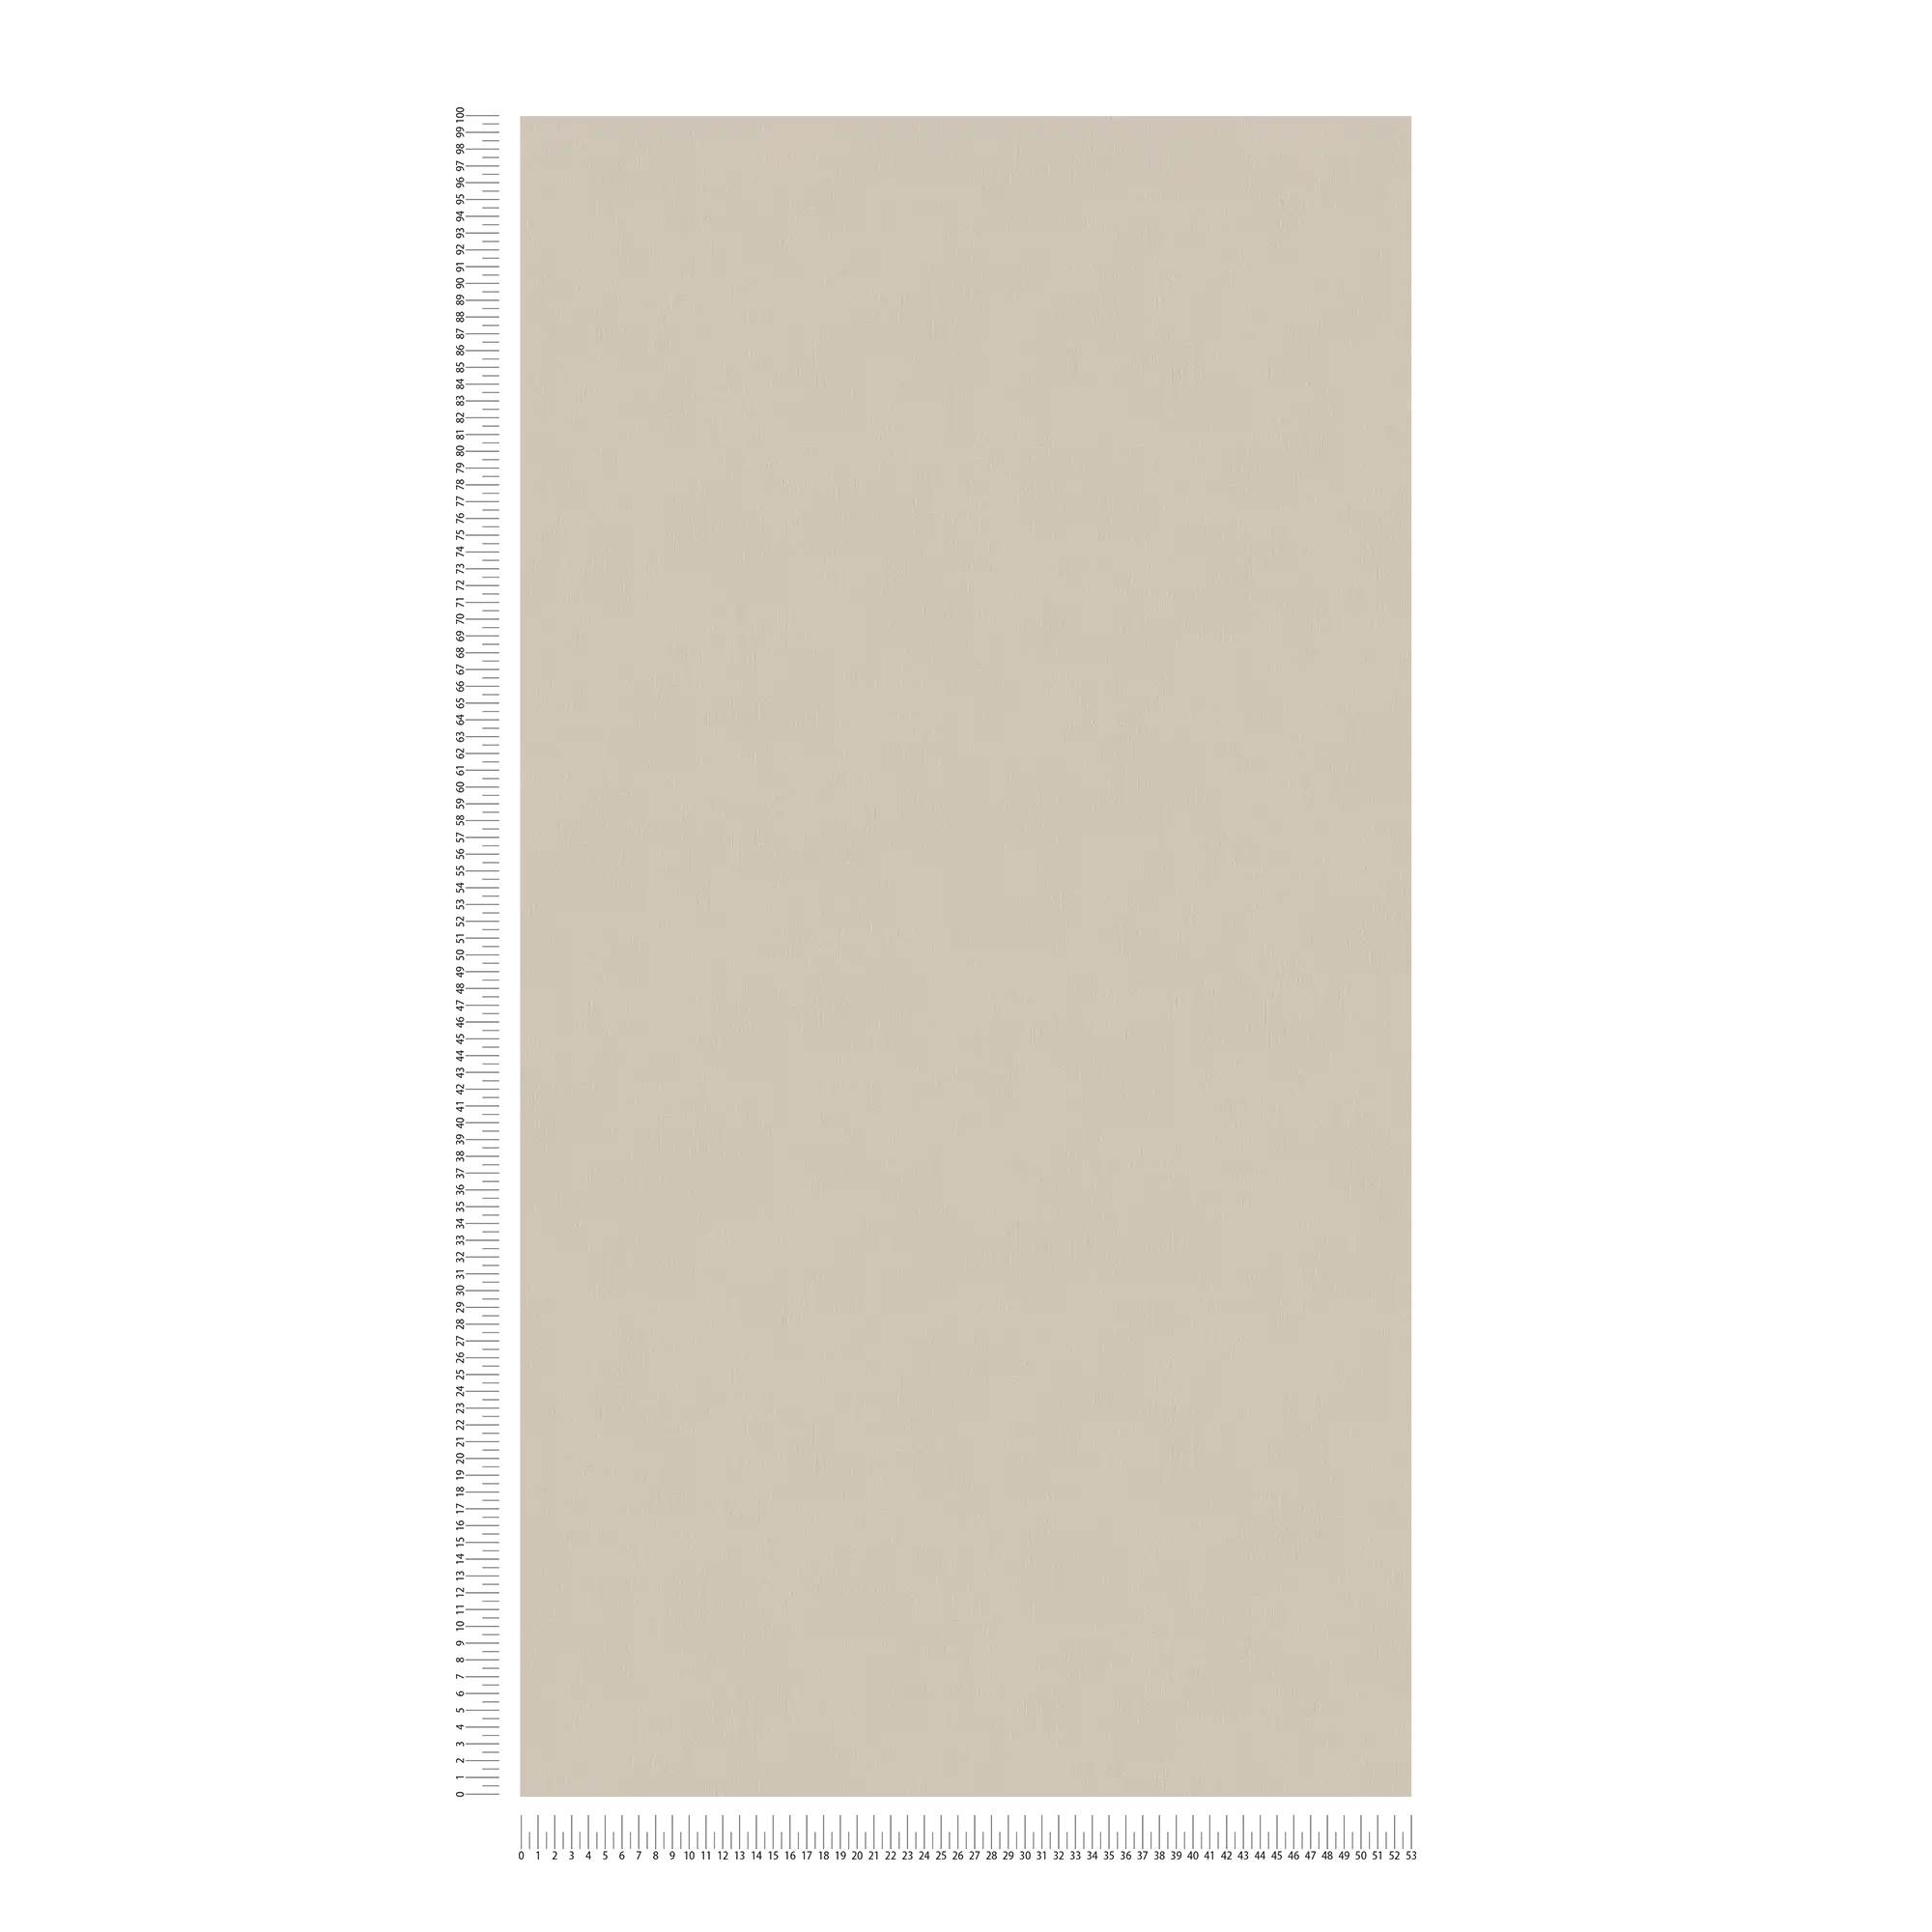             Papier peint intissé gris-brun clair avec surface lisse
        